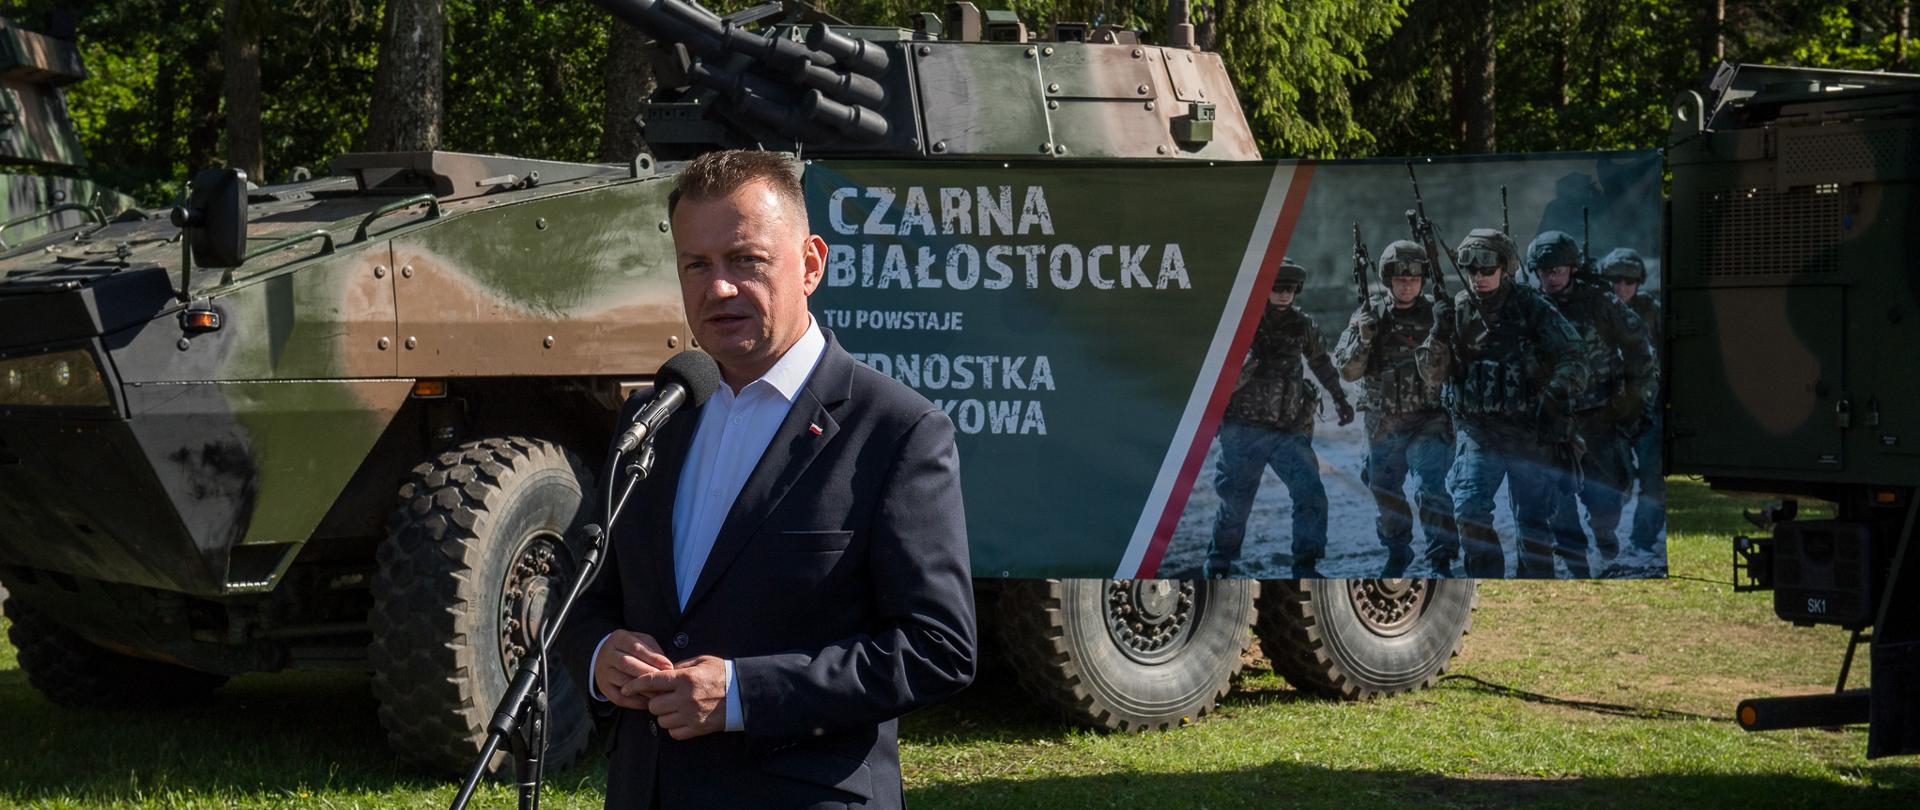 12 sierpnia szef MON odwiedził mieszkańców Czarnej Białostockiej, gdzie dziś odbywa się piknik wojskowy z okazji zbliżającego się święta Wojska Polskiego. 